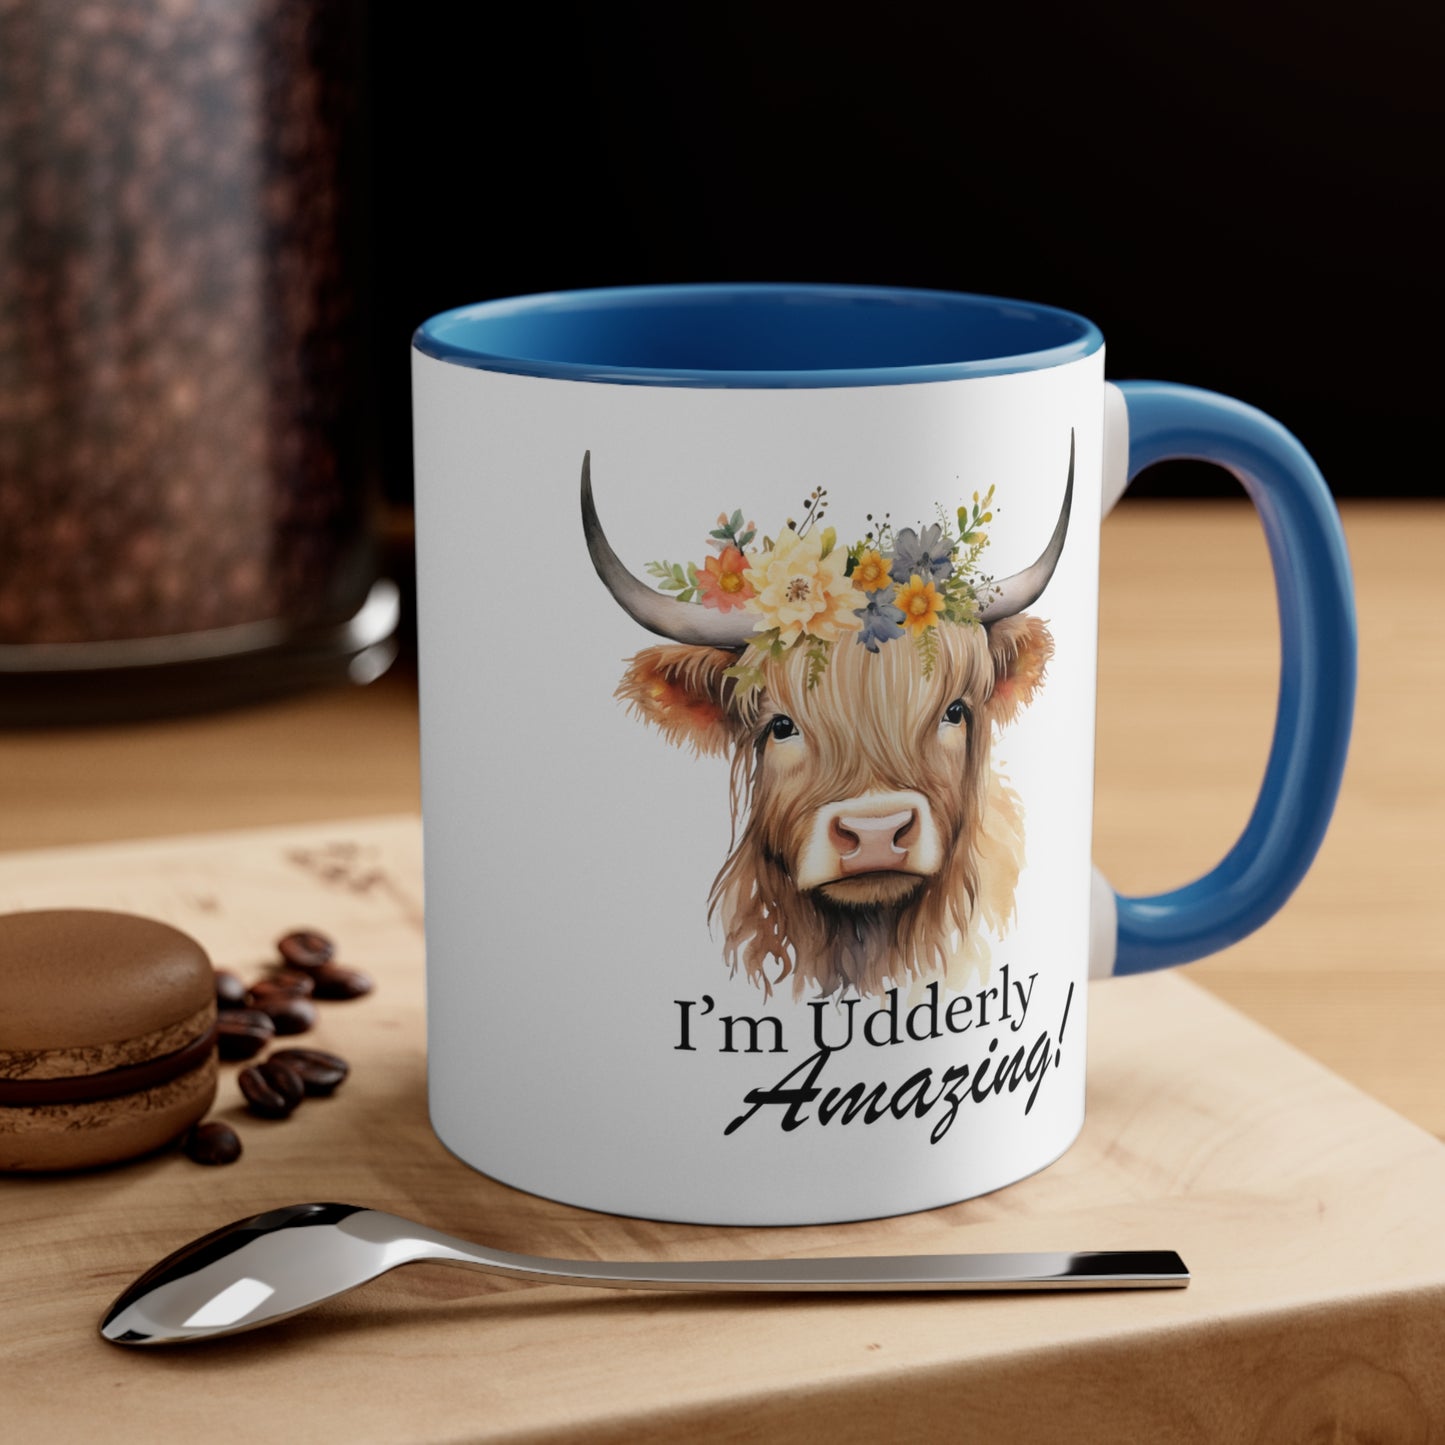 I'm Udderly Amazing! Accent Coffee Mug, 11oz